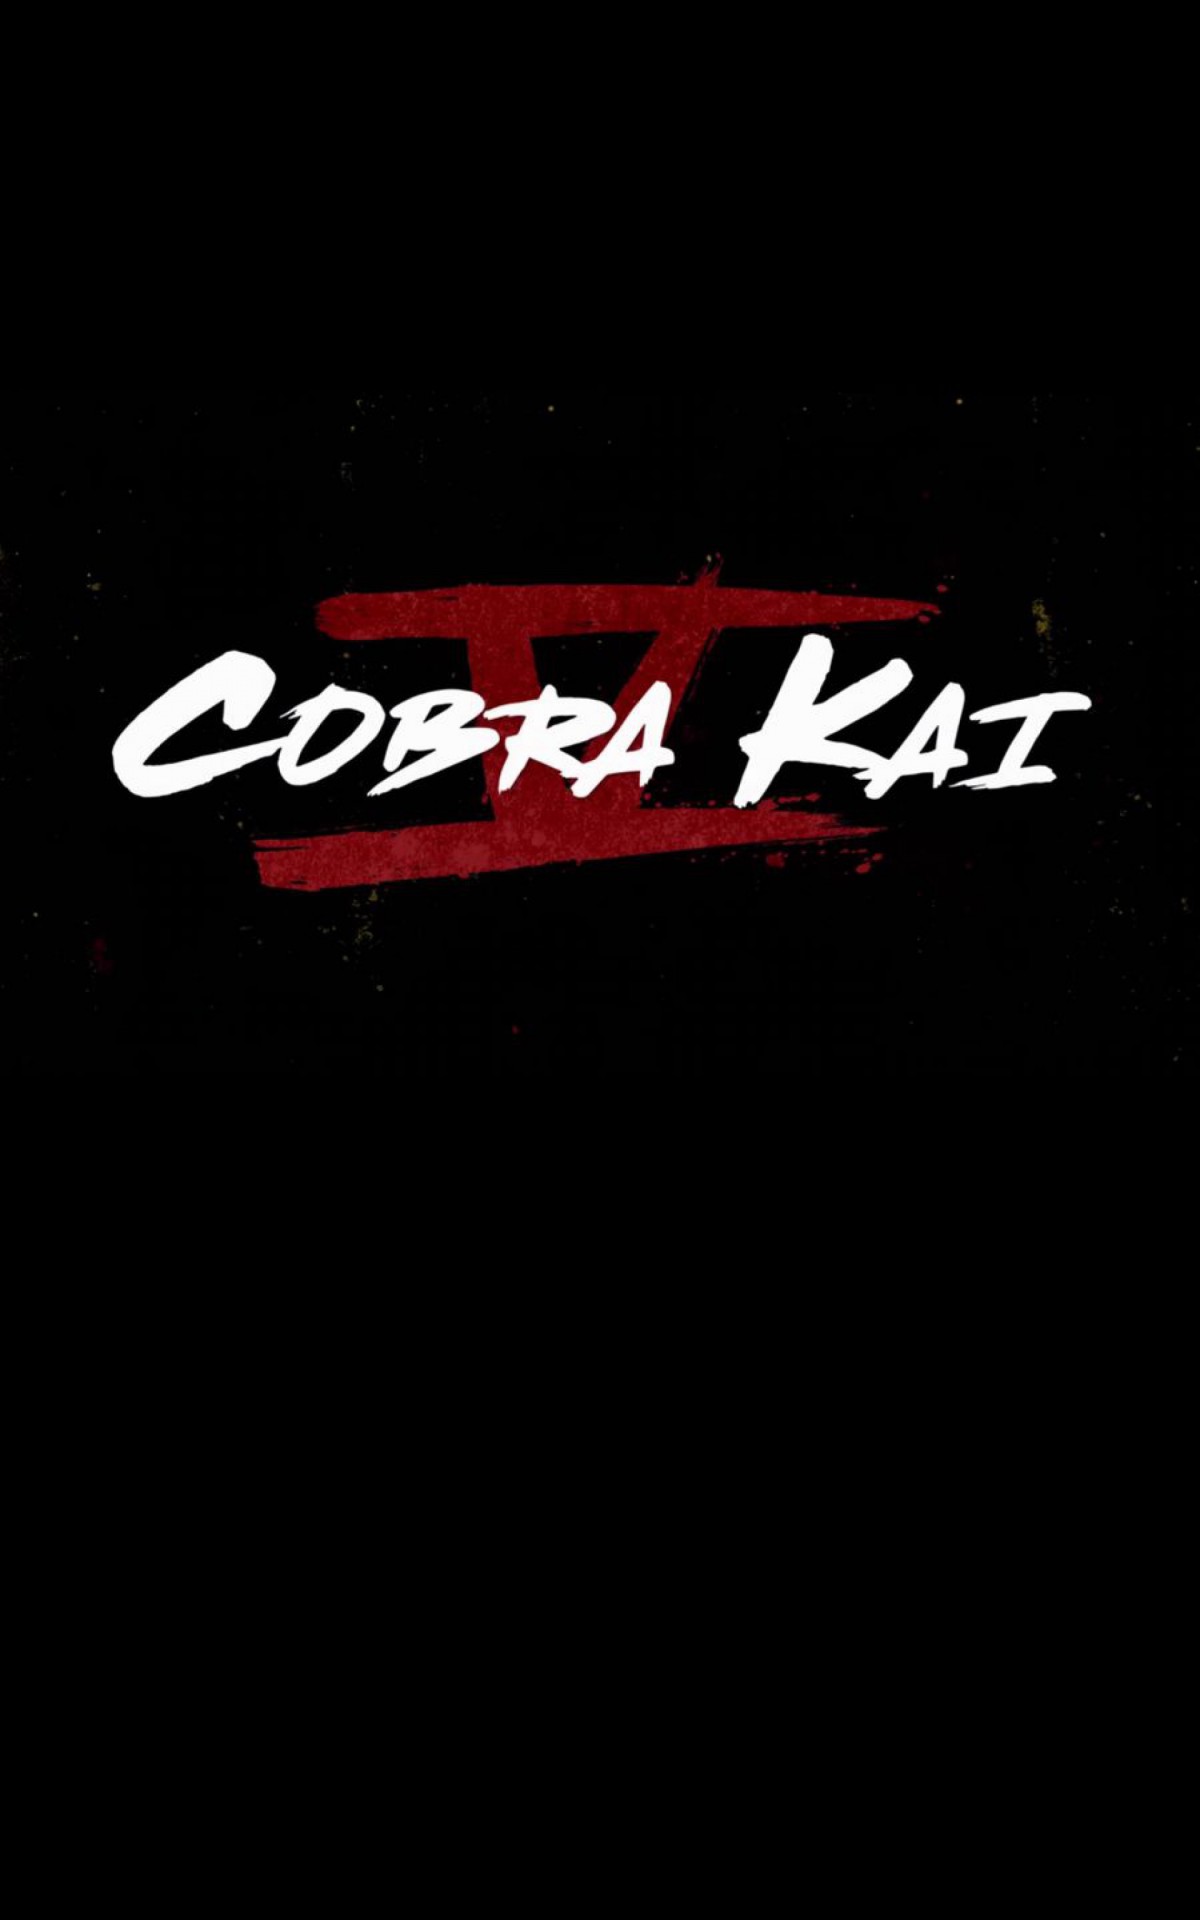 Cobra Kai ganha novo trailer oficial e imagens da 5ª temporada